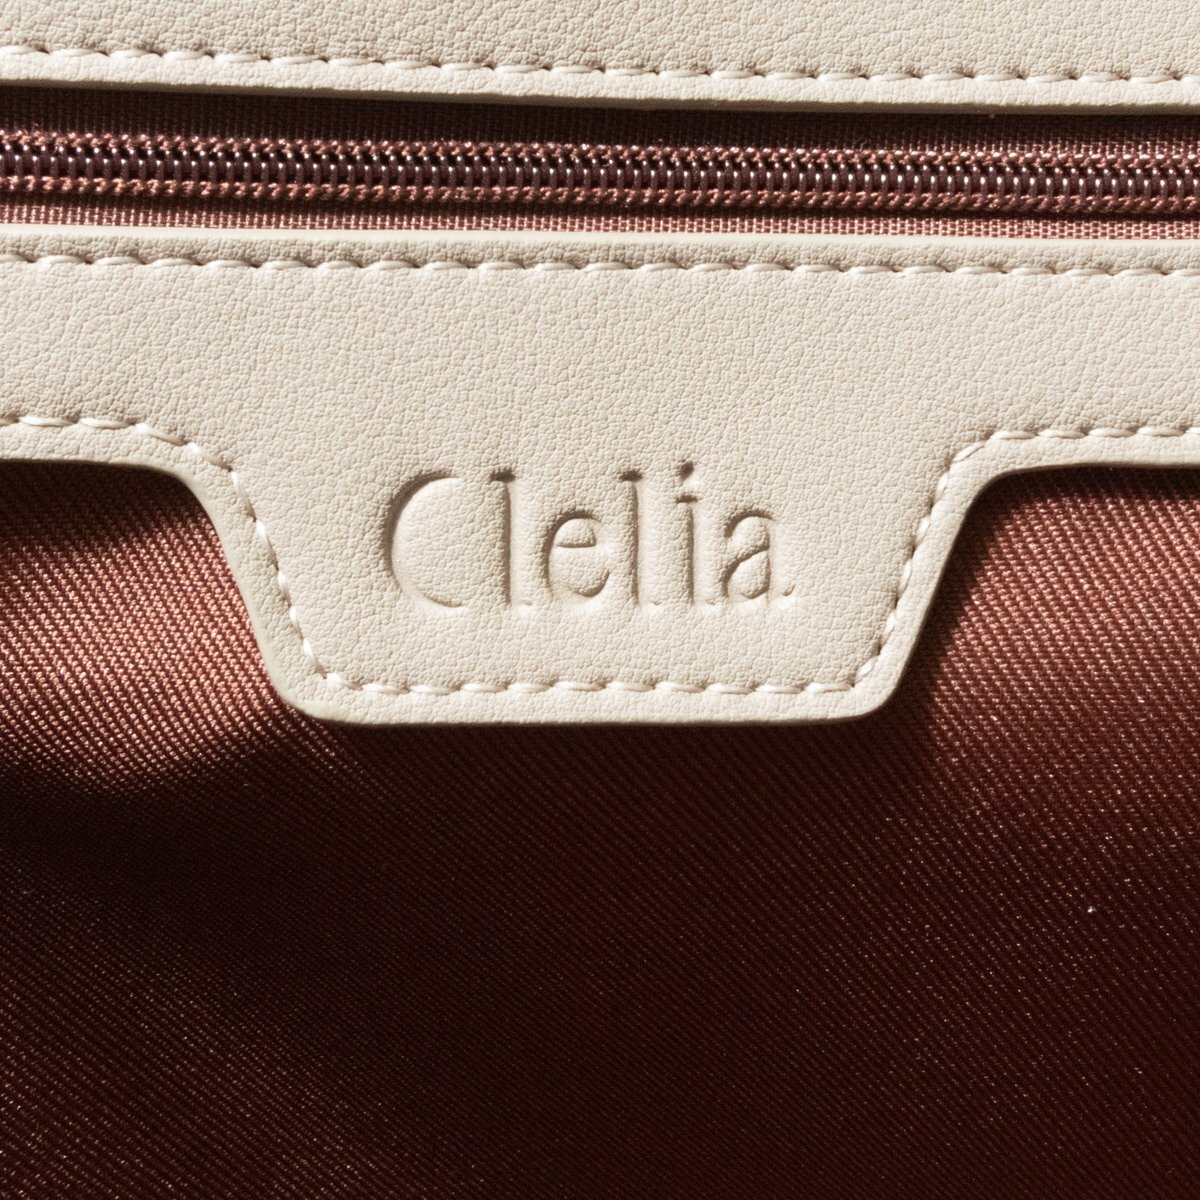 未使用品 Clelia クレリア トートバッグ 自立式 合成皮革 レディース 手さげ 大容量 bag 肩掛け ライトグレー 仕事鞄 新生活 A4可能_画像7